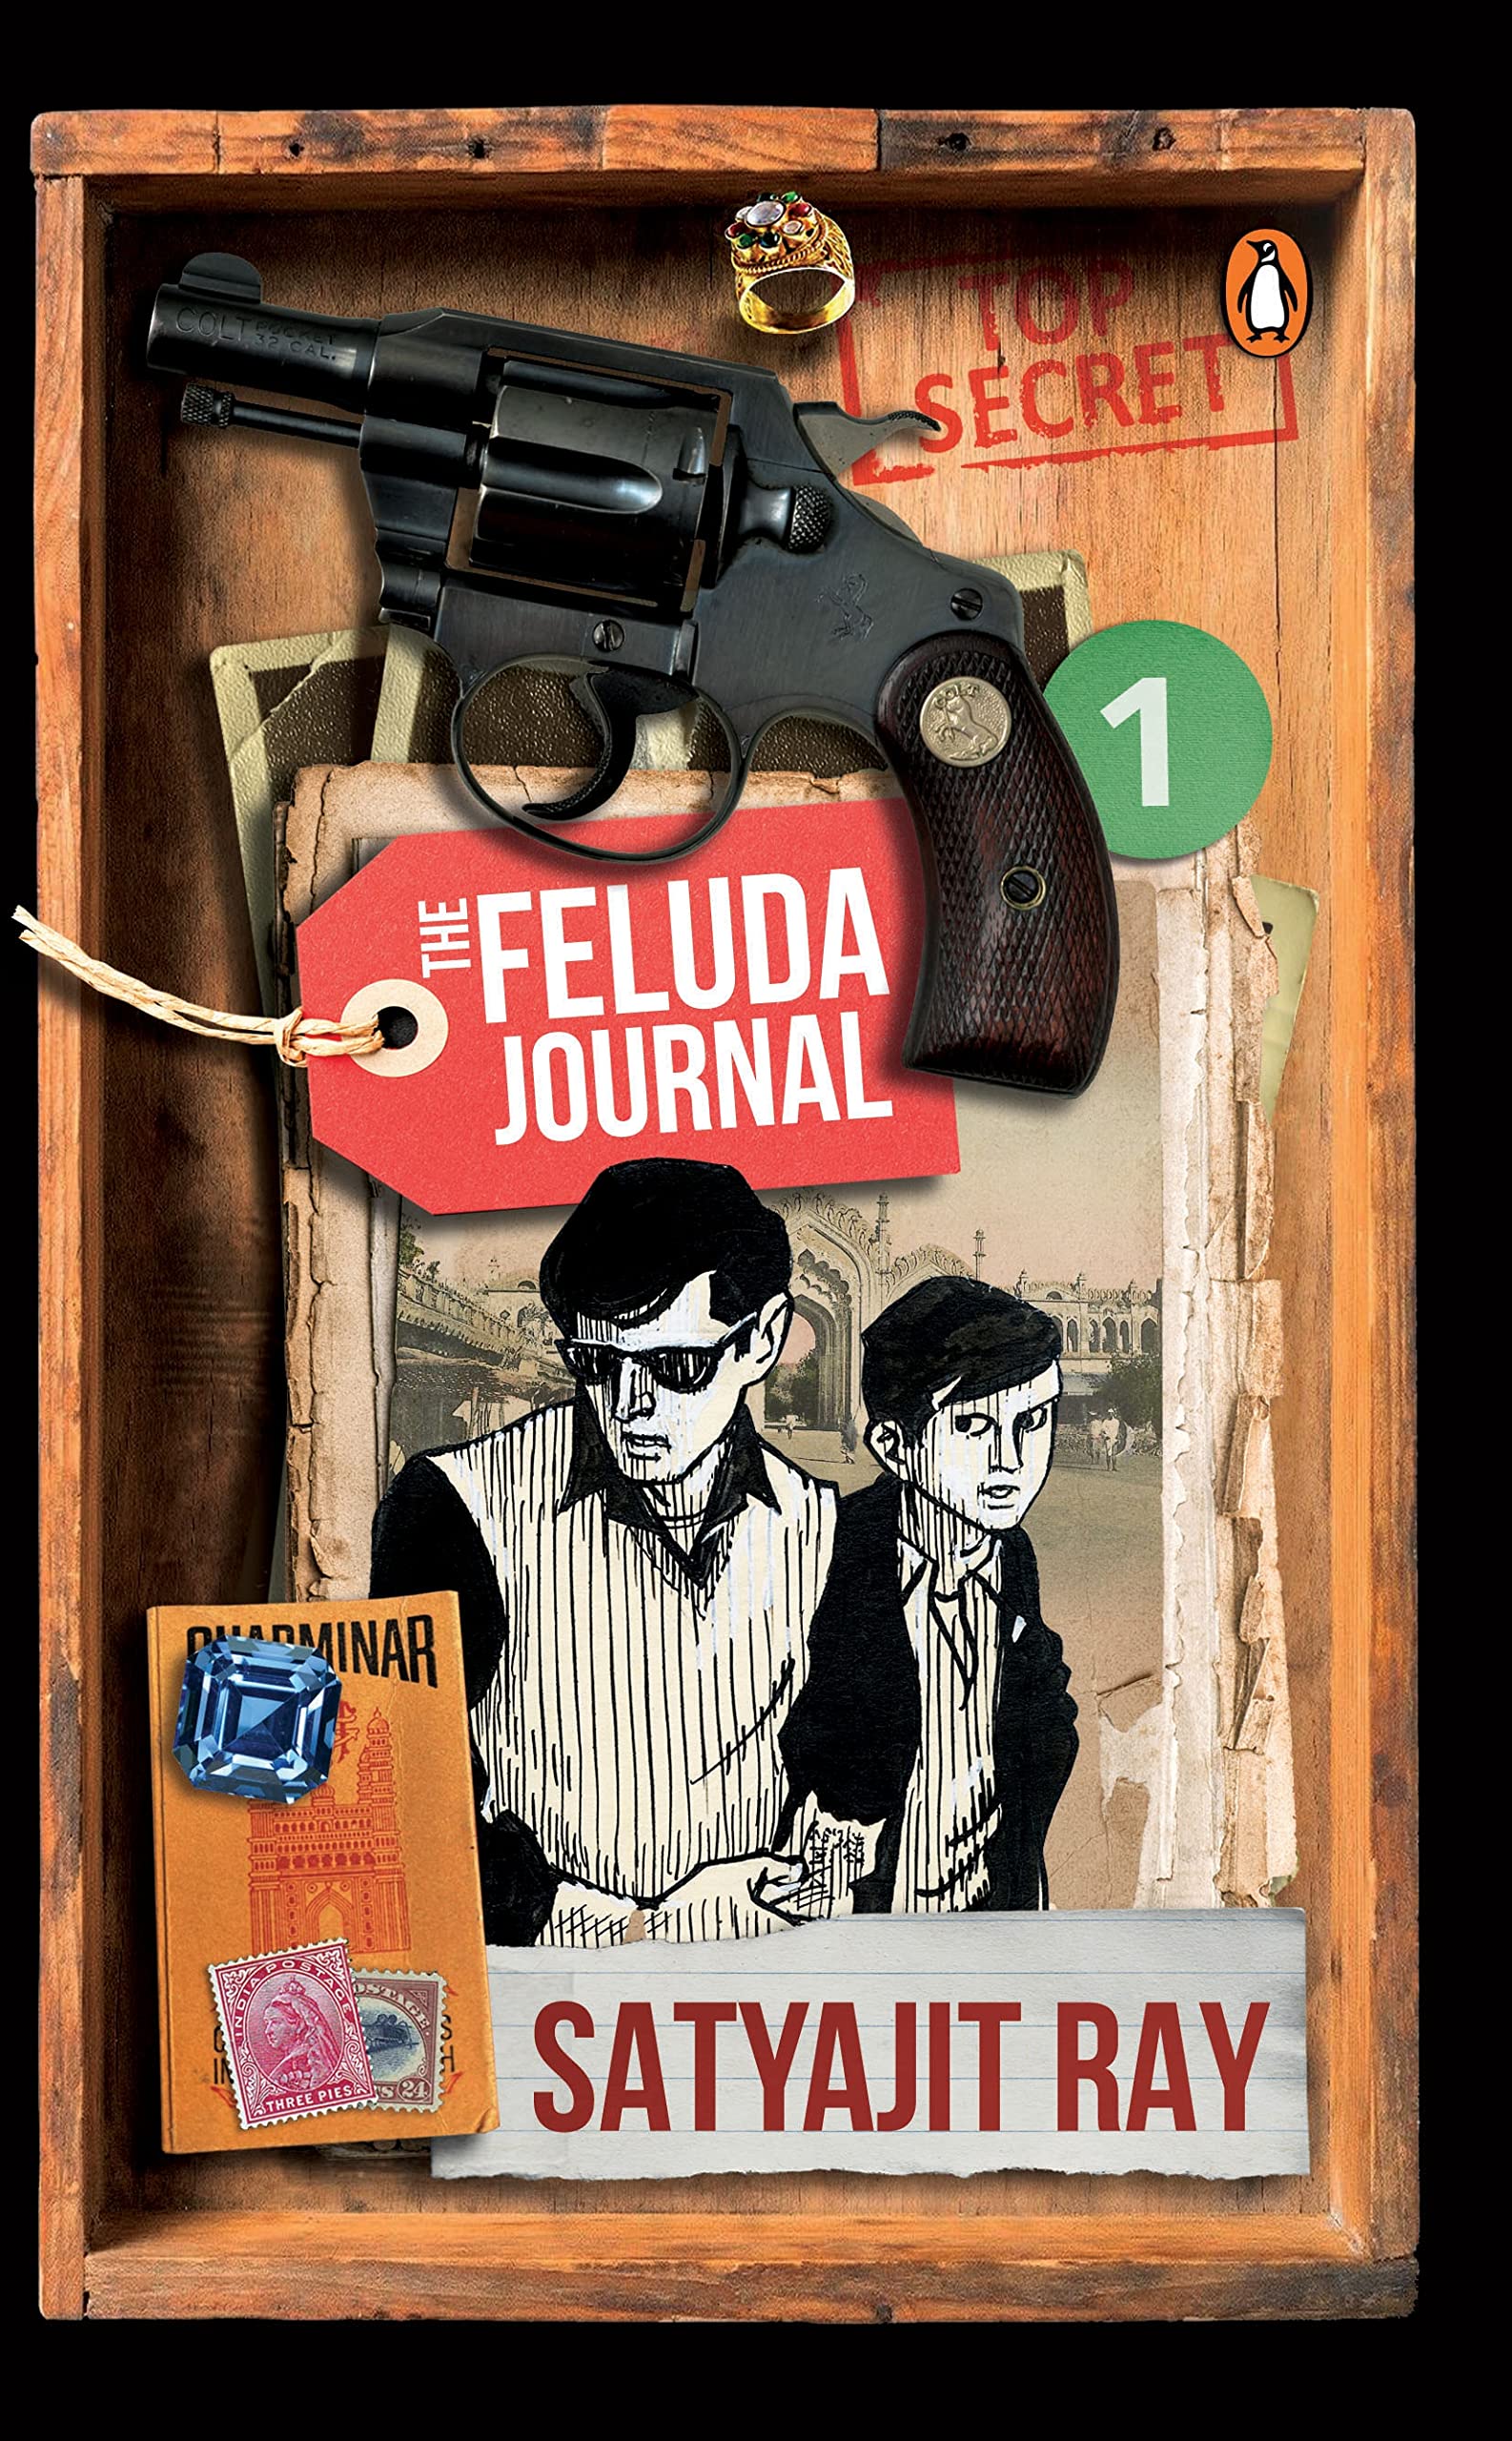 The Feluda Journal by  Satyajit Ray at BIBLIONEPAL Bookstore